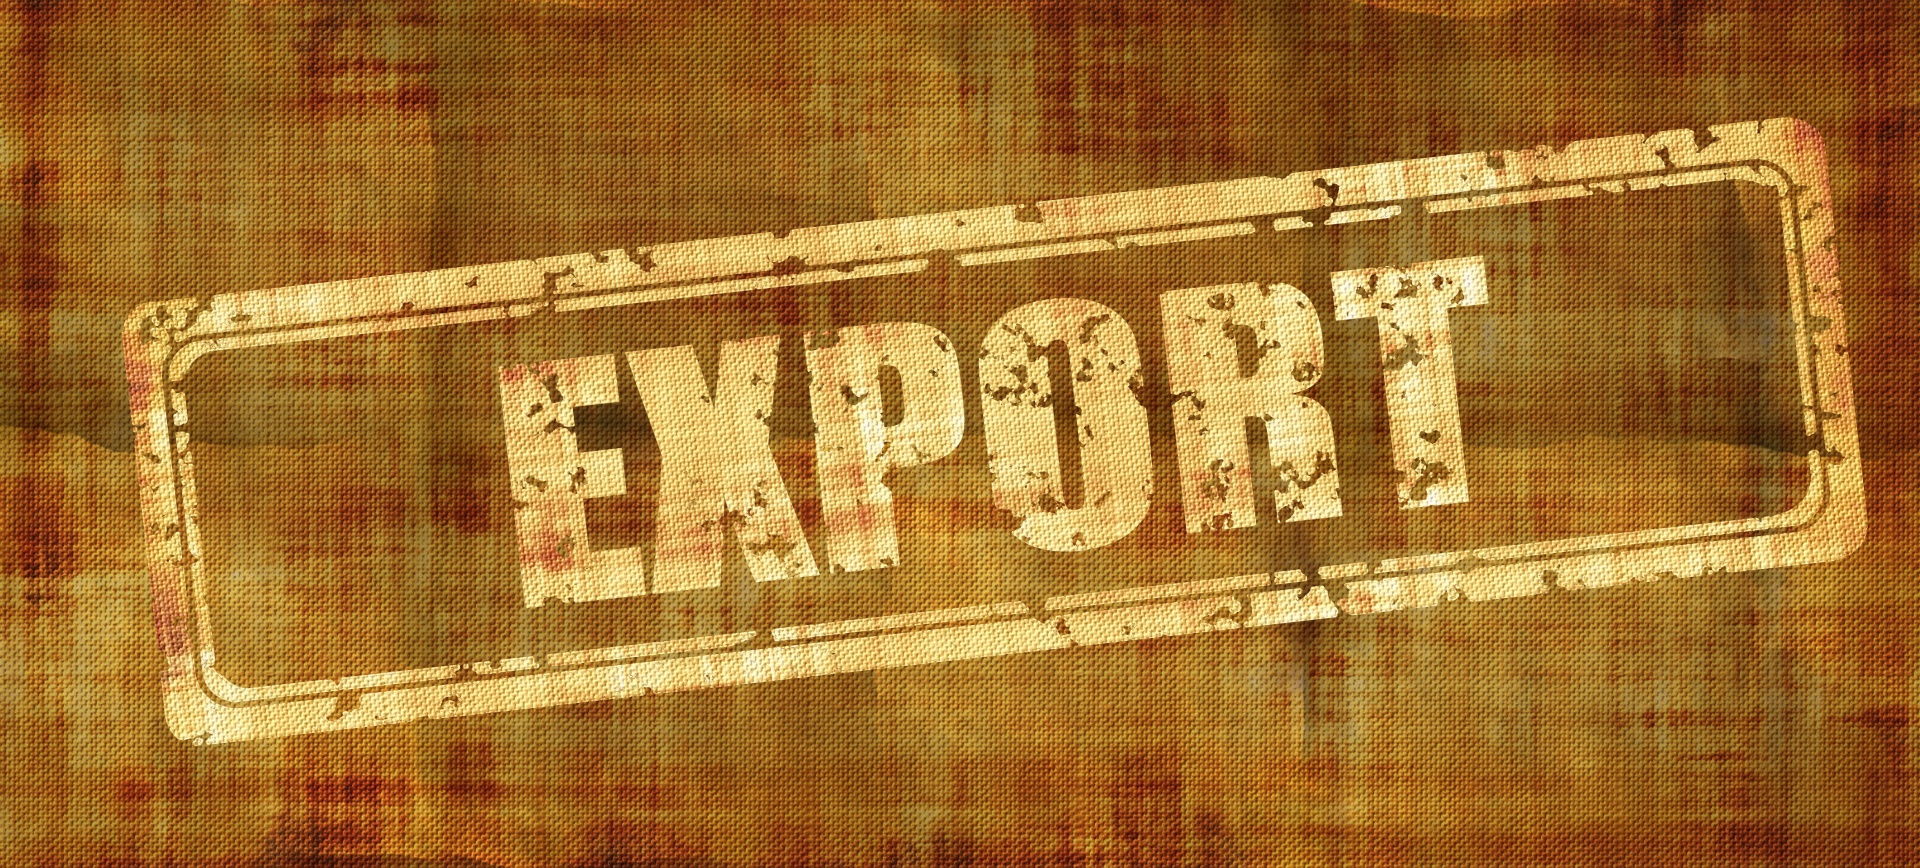 export.jpg